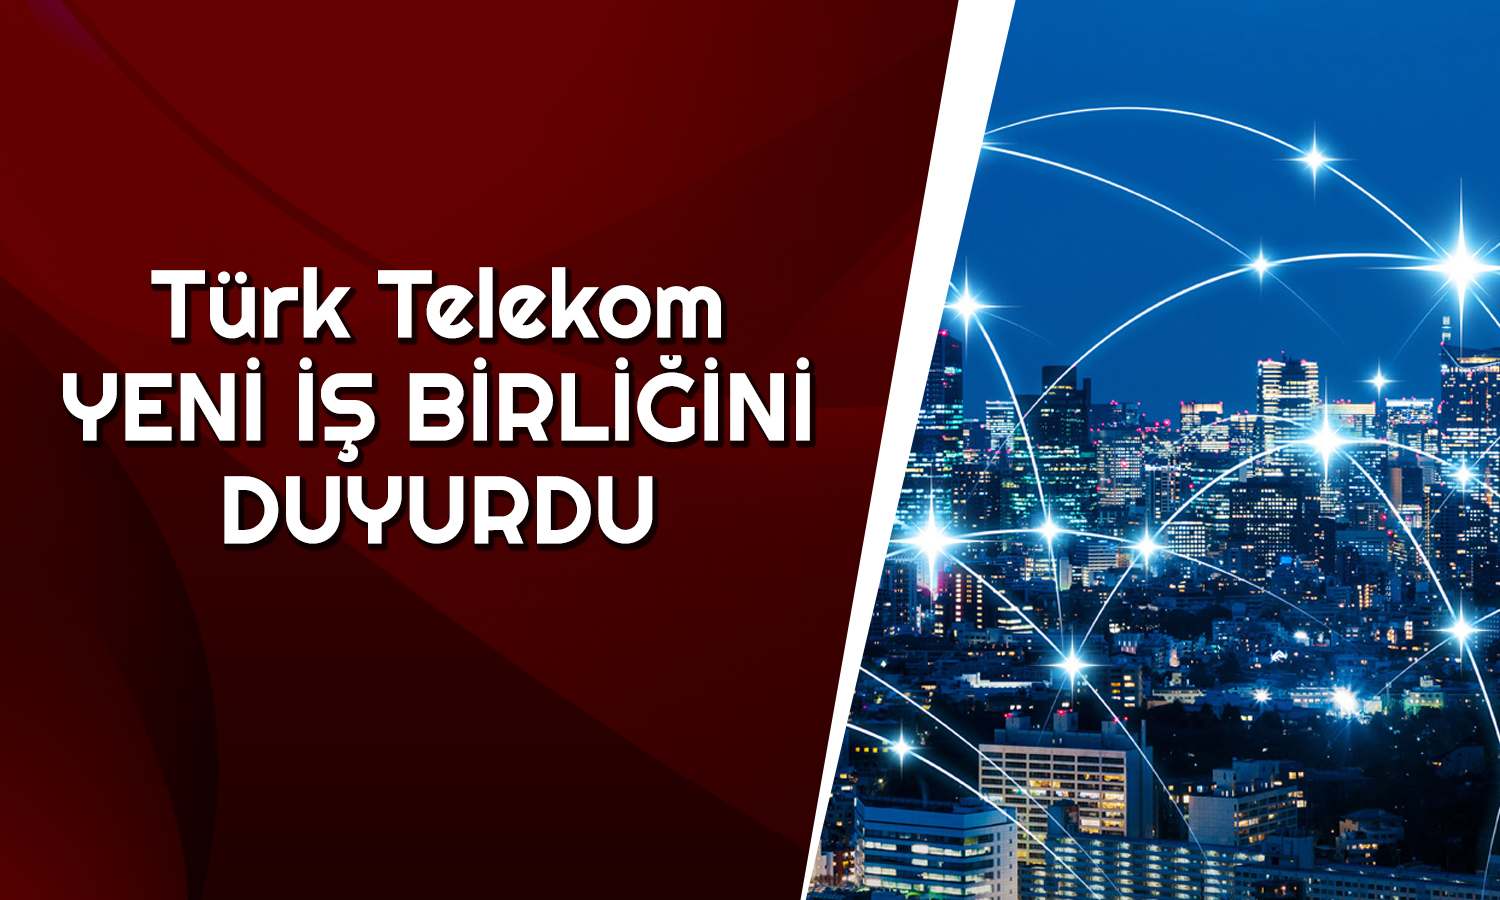 Türk Telekom’un İştirakinden Azercell ile Yeni İş Birliği